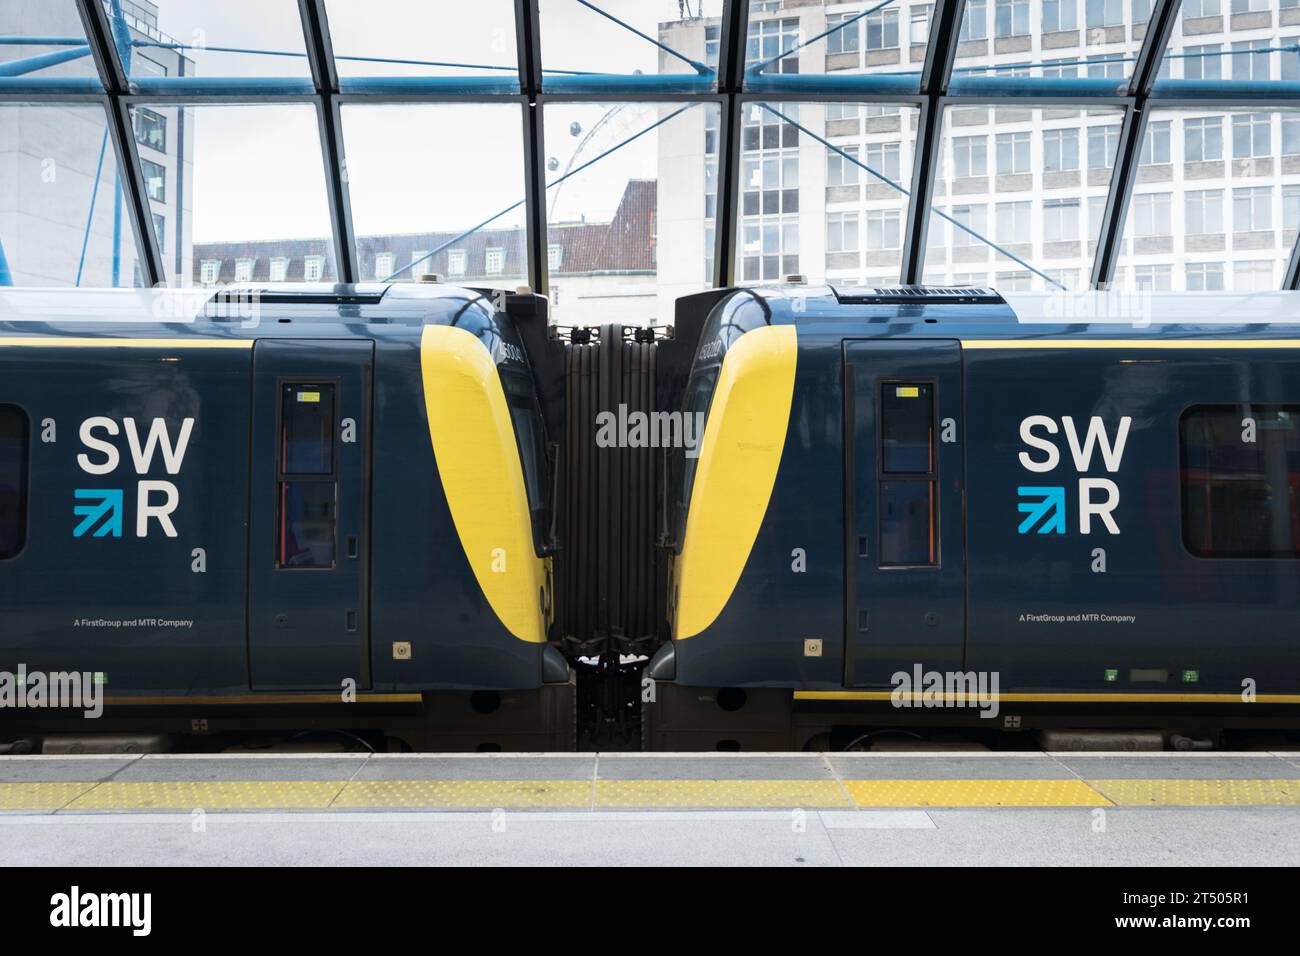 Voitures et couleurs de décoration du South West Railway à Waterloo Station, Londres, Angleterre, Royaume-Uni Banque D'Images